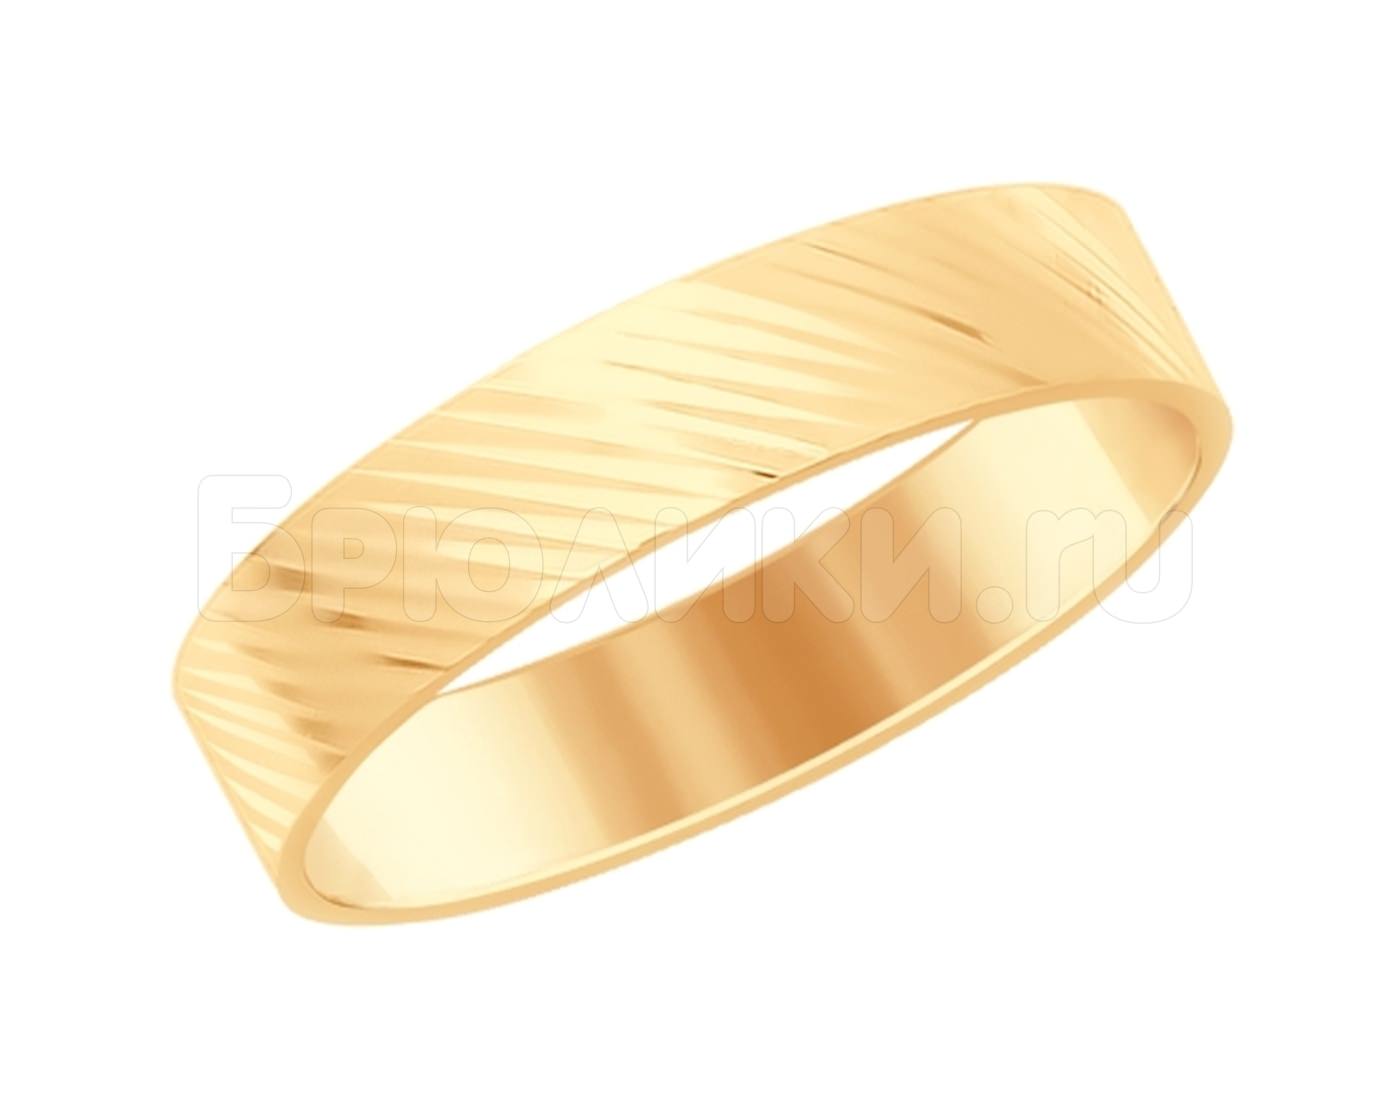 Золотое кольцо с алмазной гранью. Обручальное кольцо Соколов с алмазной гранью. Золотое кольцо с алмазной гранью без камней 585. Кольцо обручальное золотое Соколов. Кольца с алмазной гранью золотые обручальные.